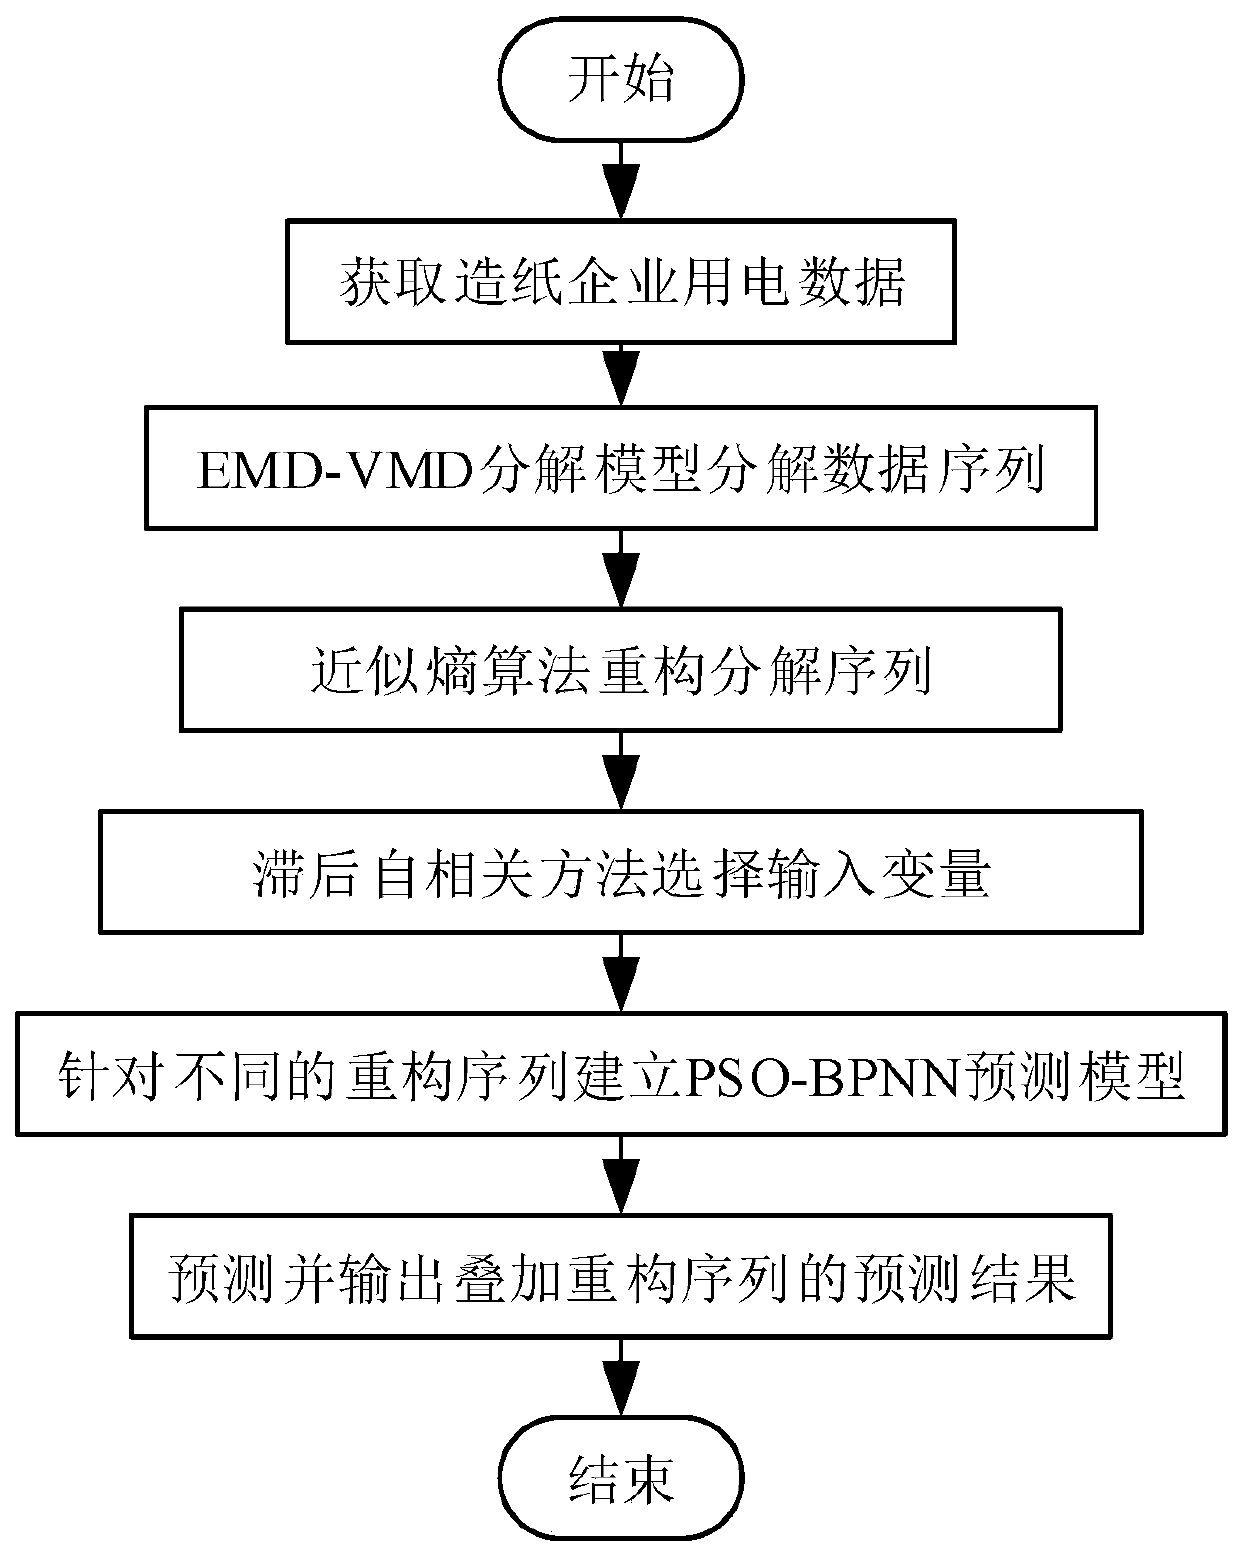 Short-term power load prediction model establishment method based on EMD-VMD-PSO-BPNN